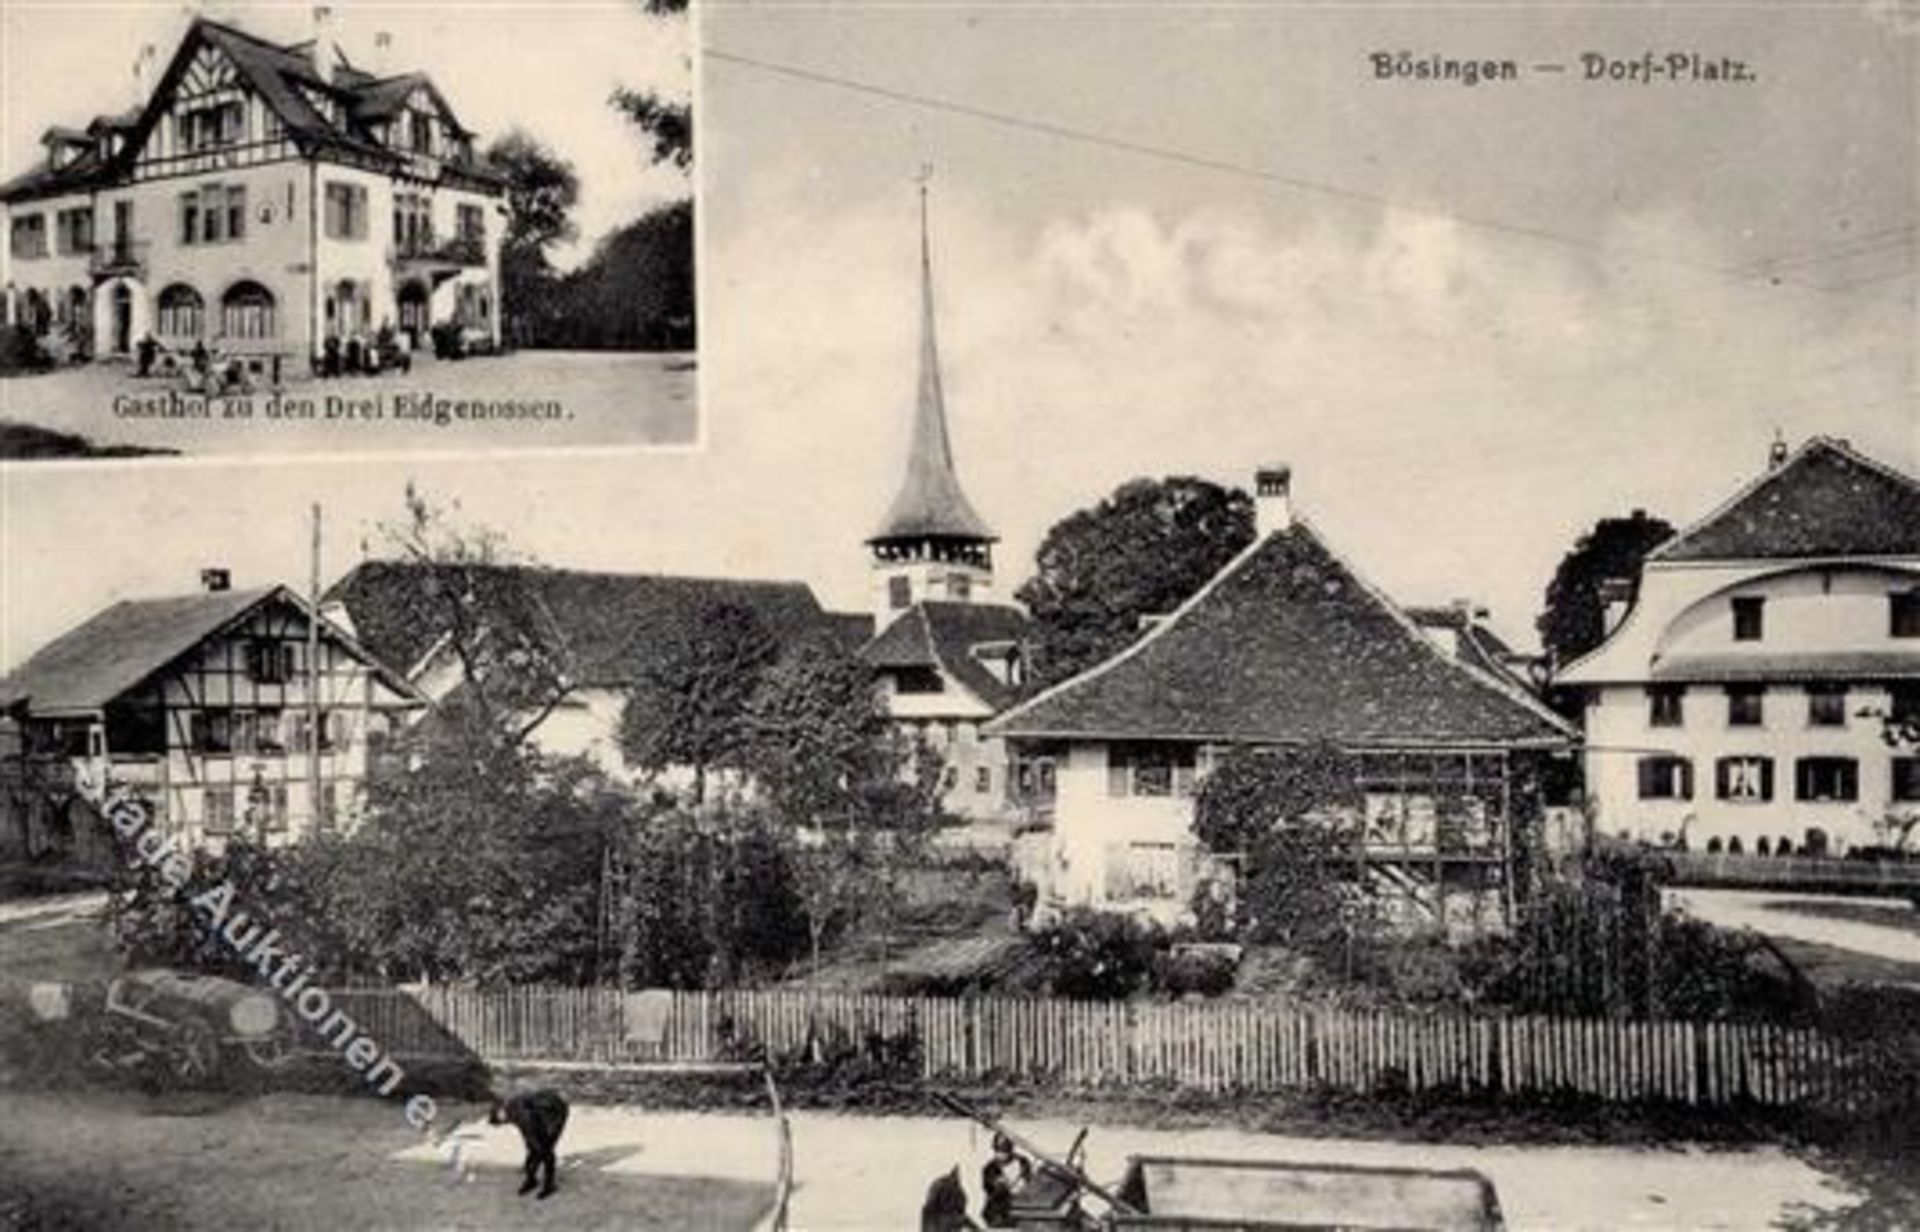 Bösingen (3178) Schweiz Gasthaus zu den drei Eidgenossen Kirche I-IIDieses Los wird in einer